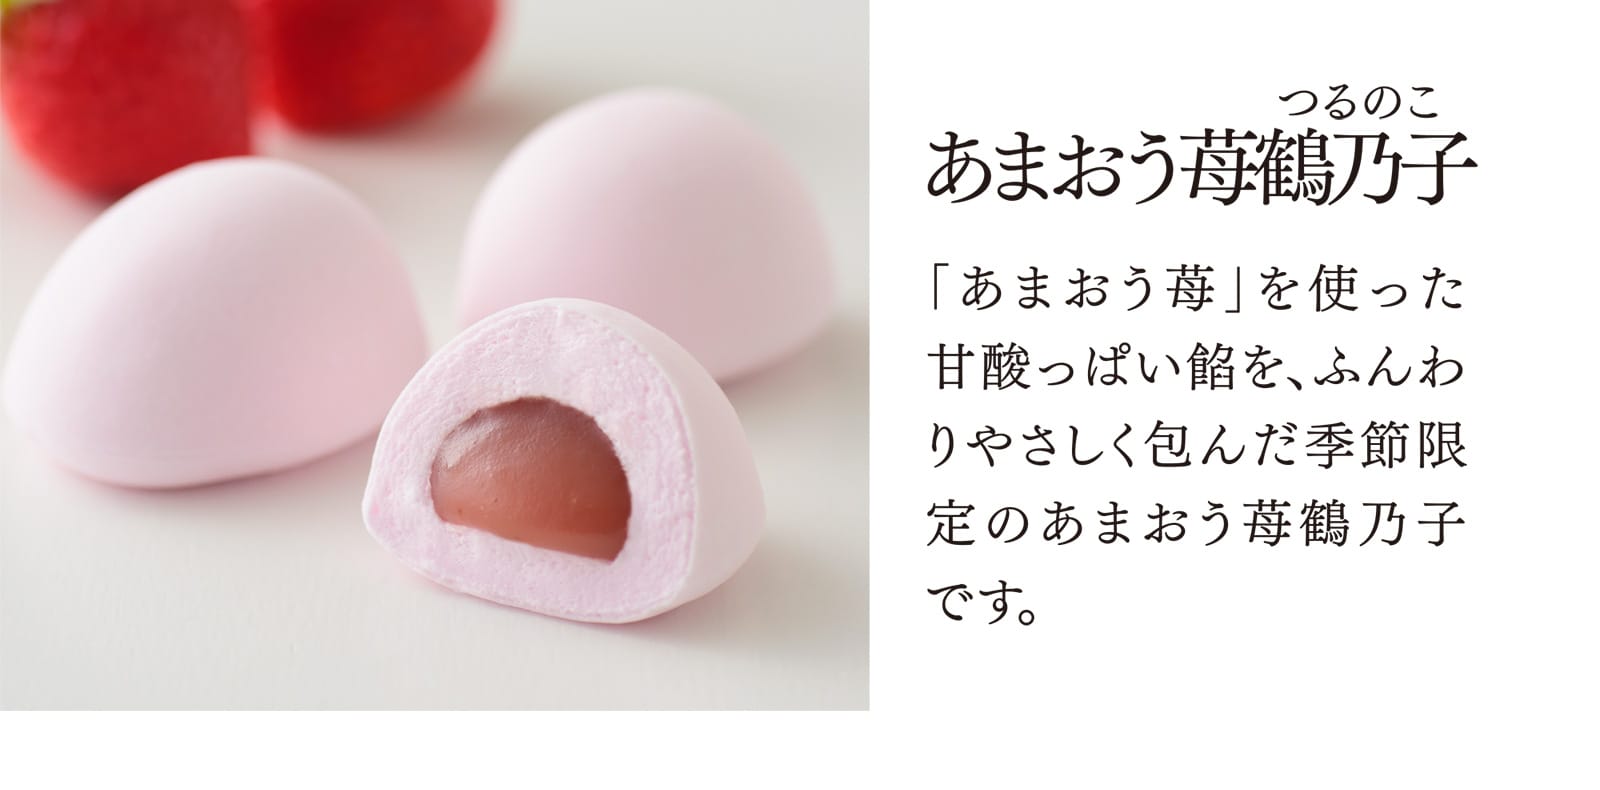 【あまおう苺鶴乃子】「あまおう苺」を使った甘酸っぱい餡を、ふんわりやさしく包んだ季節限定のあまおう苺鶴乃子です。